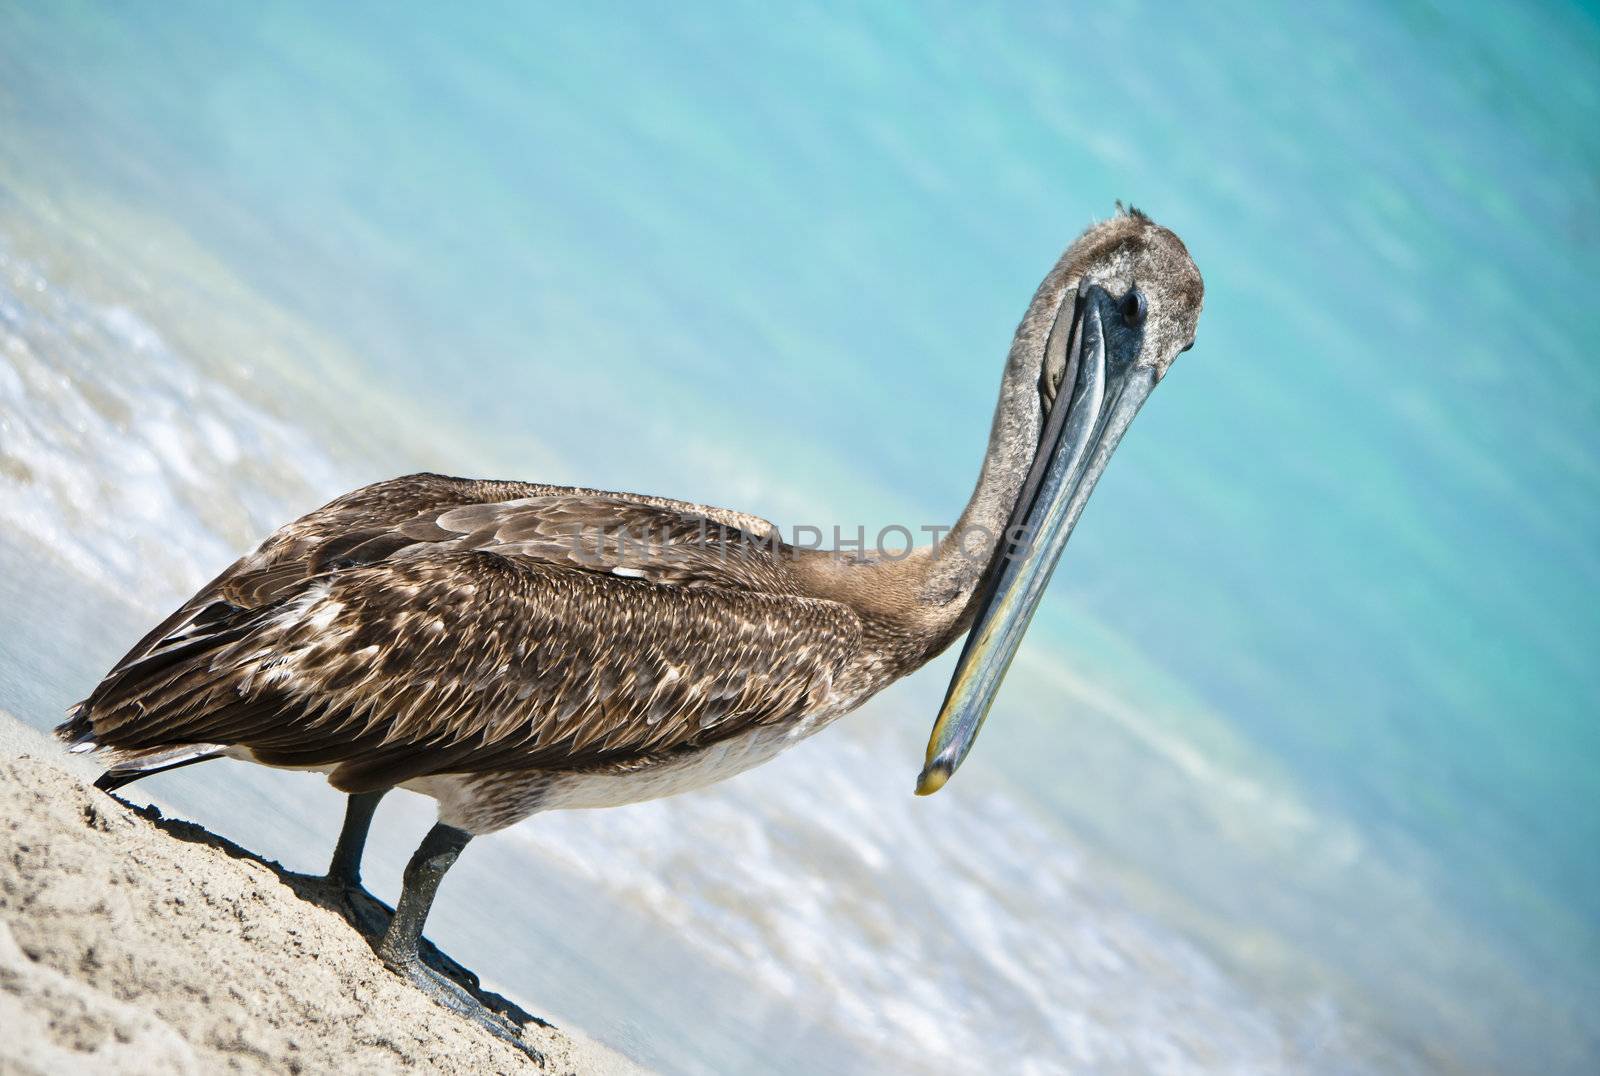 A pelican taking a break in paradise.